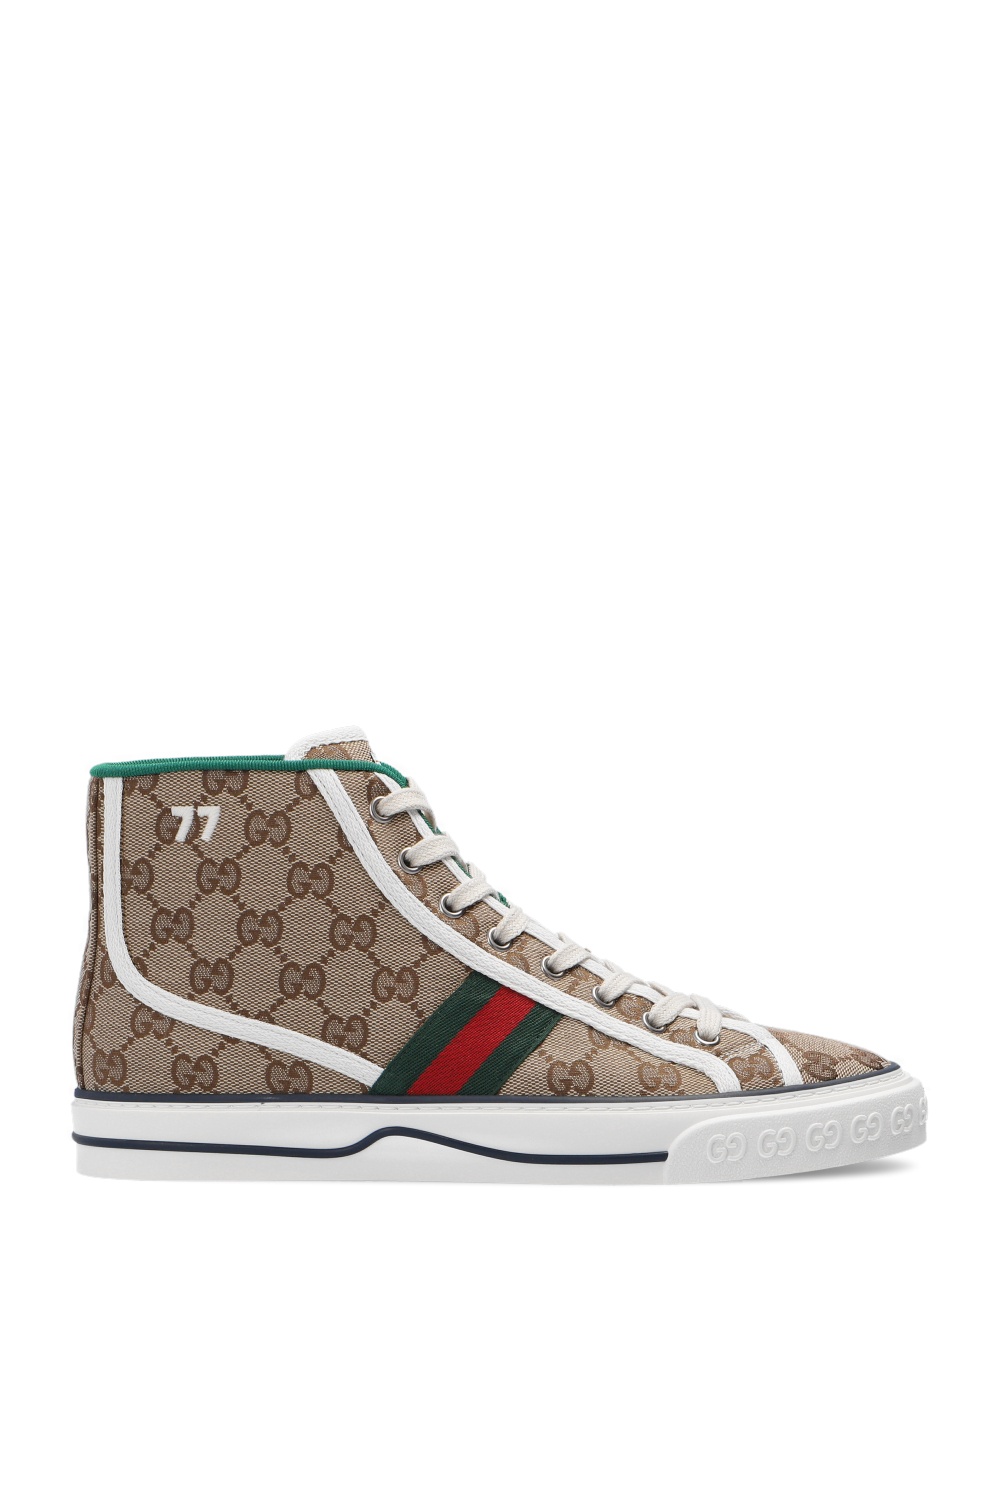 Gucci 'Tennis 1977' high-top sneakers | Women's Shoes | Vitkac